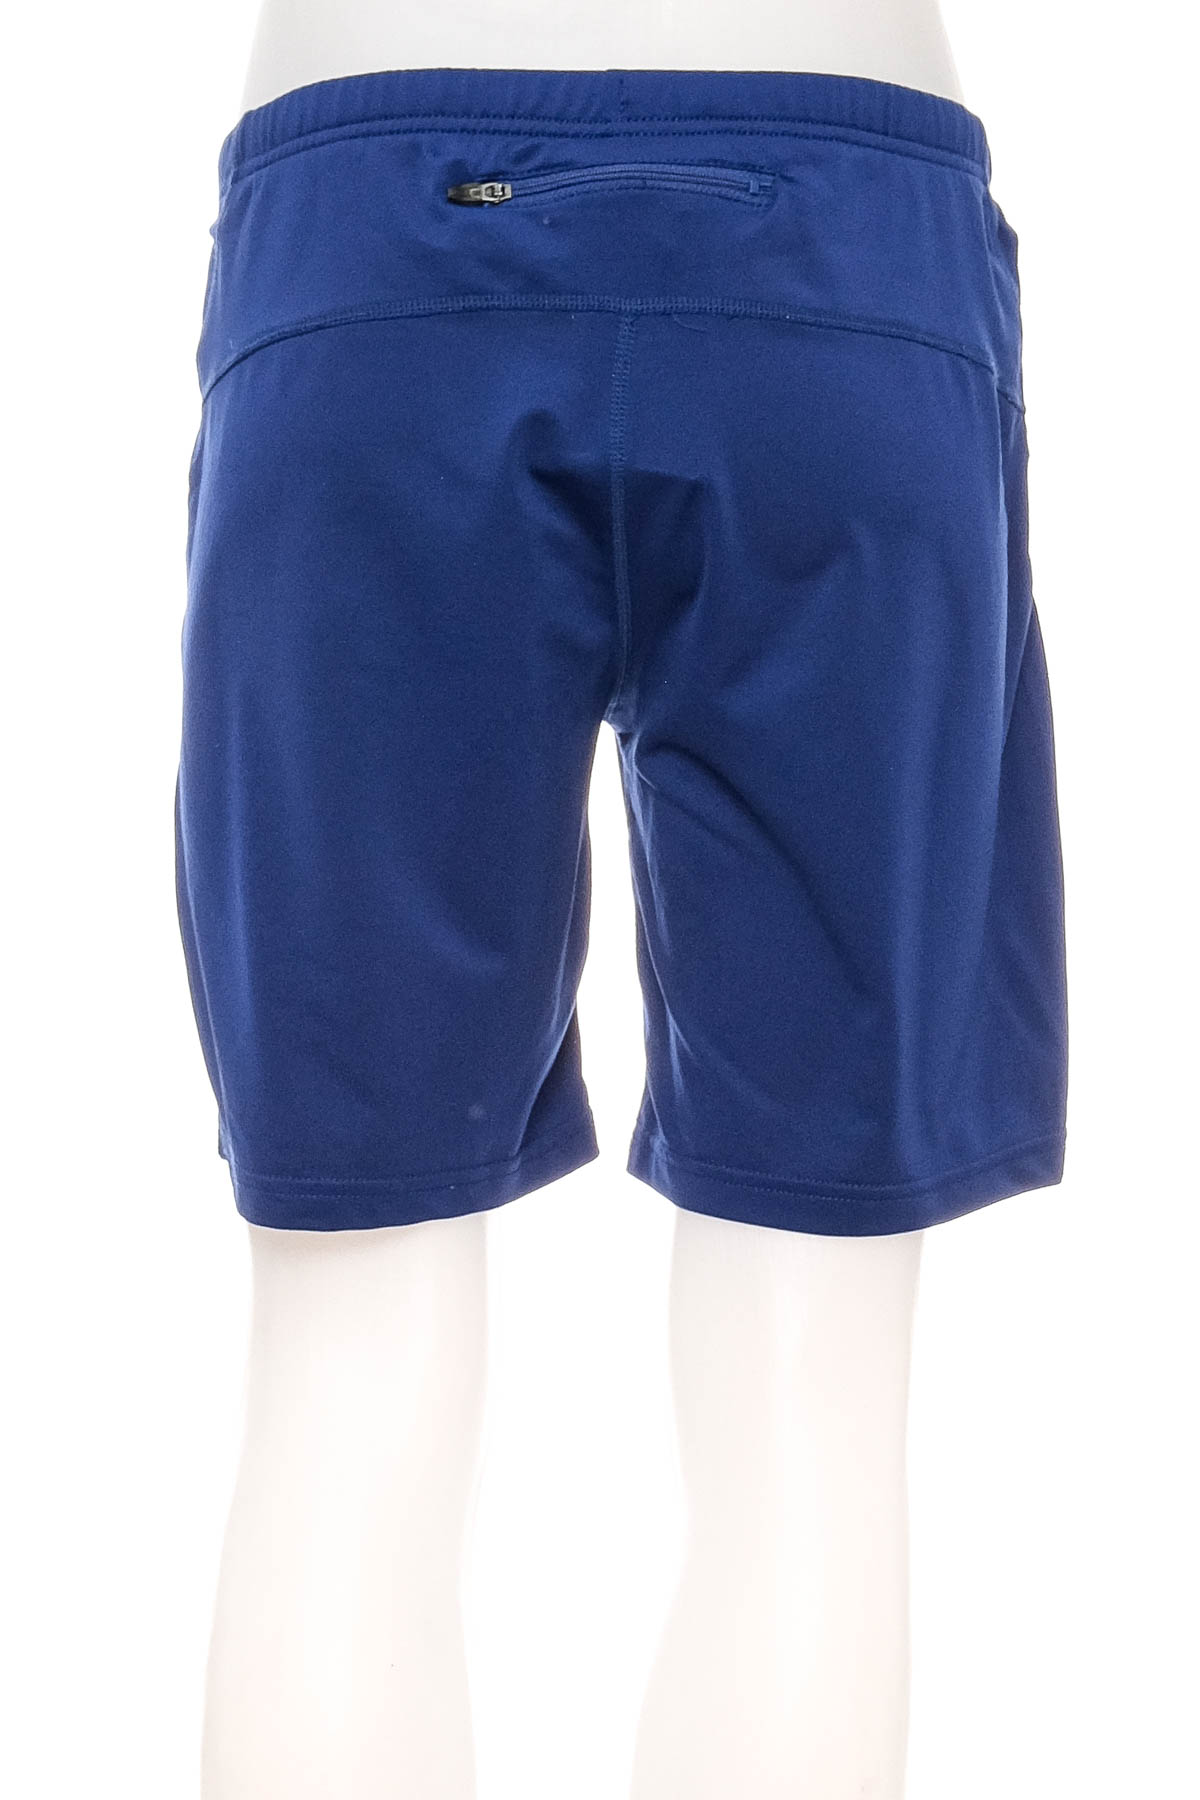 Female shorts - Shamp - 1